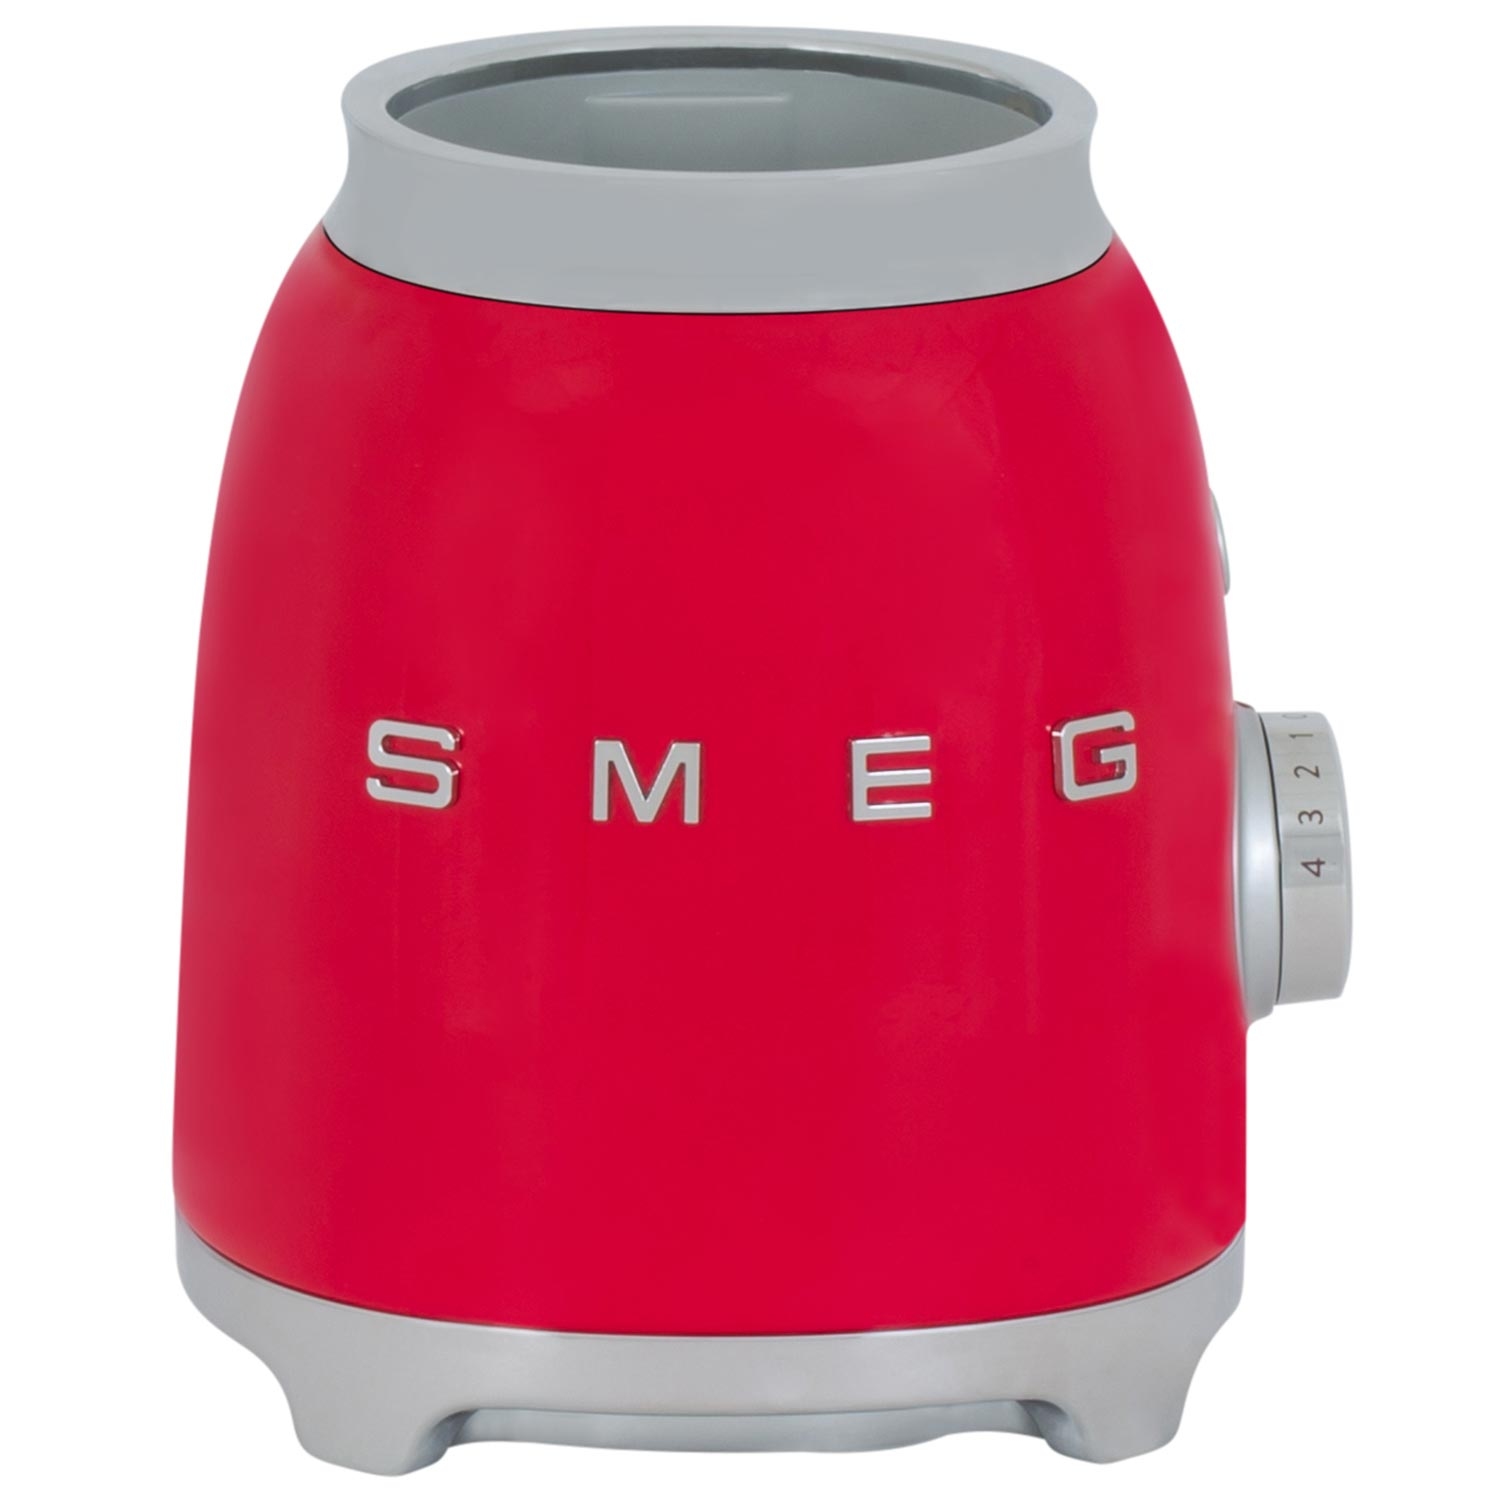 Smeg 50's Retro Style Blender - RED - 4